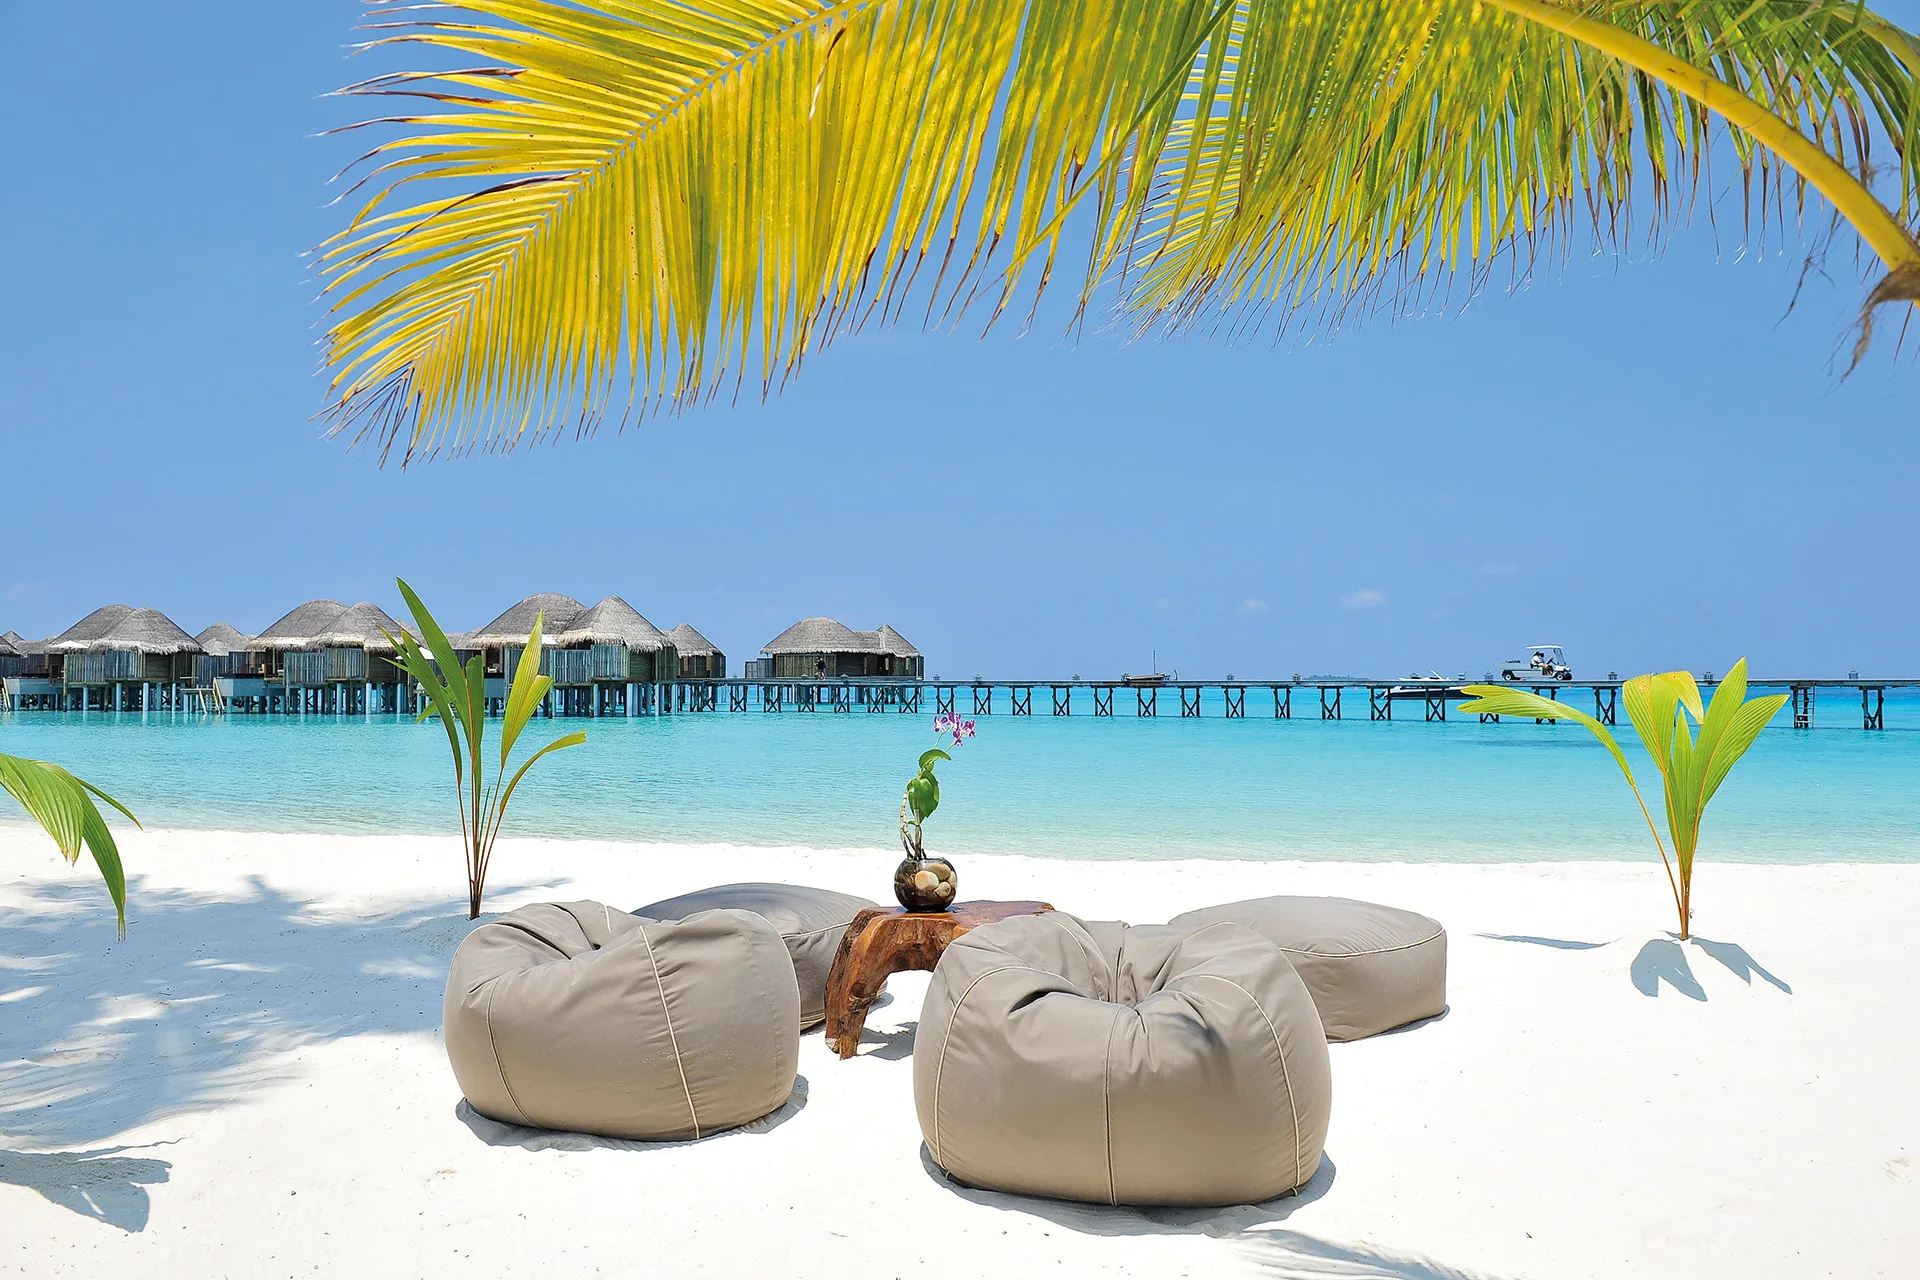 Sitzkissen am Strand unter einer Palme